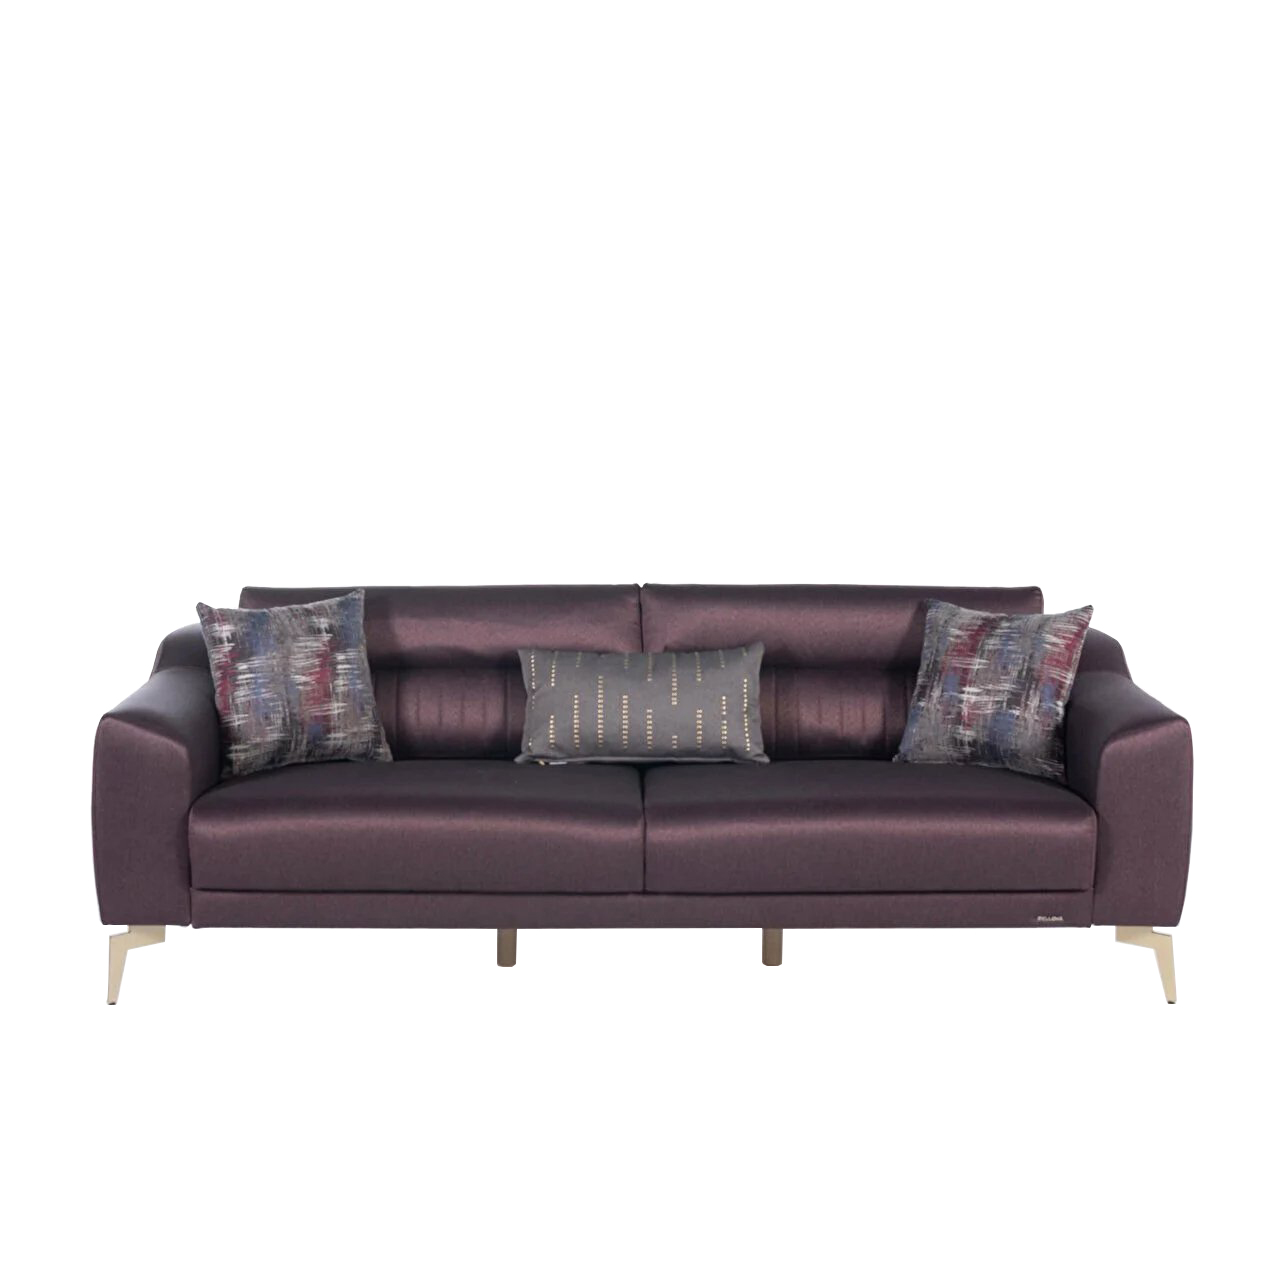 Диван-кровать 3х местный Bellona Fonte, цвет: коричнево-фиолетовый, ножки- беж, размер 225х100х80 см (FONT-03)FONT-03